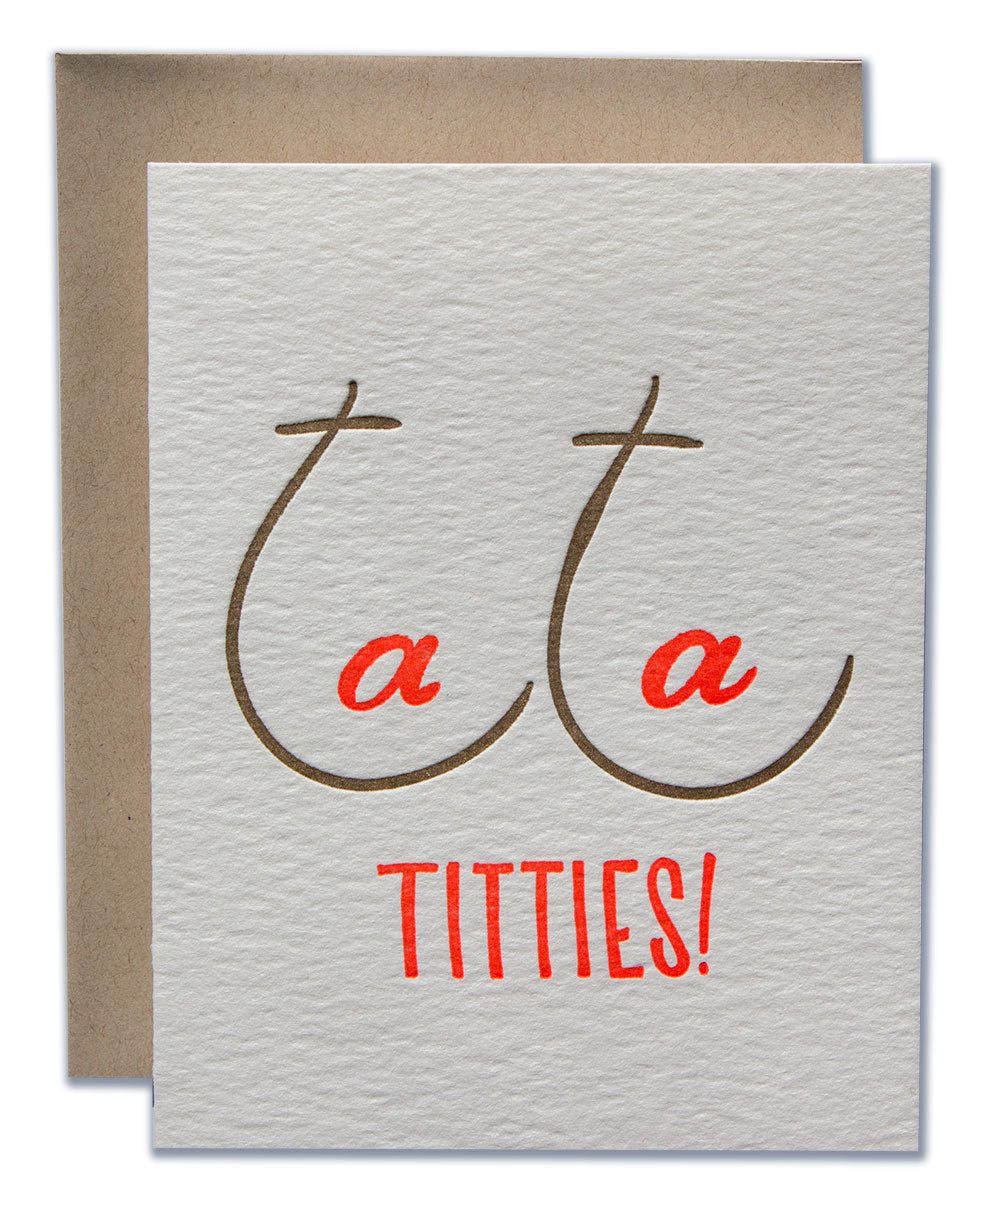 Ta Ta Titties! - Ladyfingers Letterpress